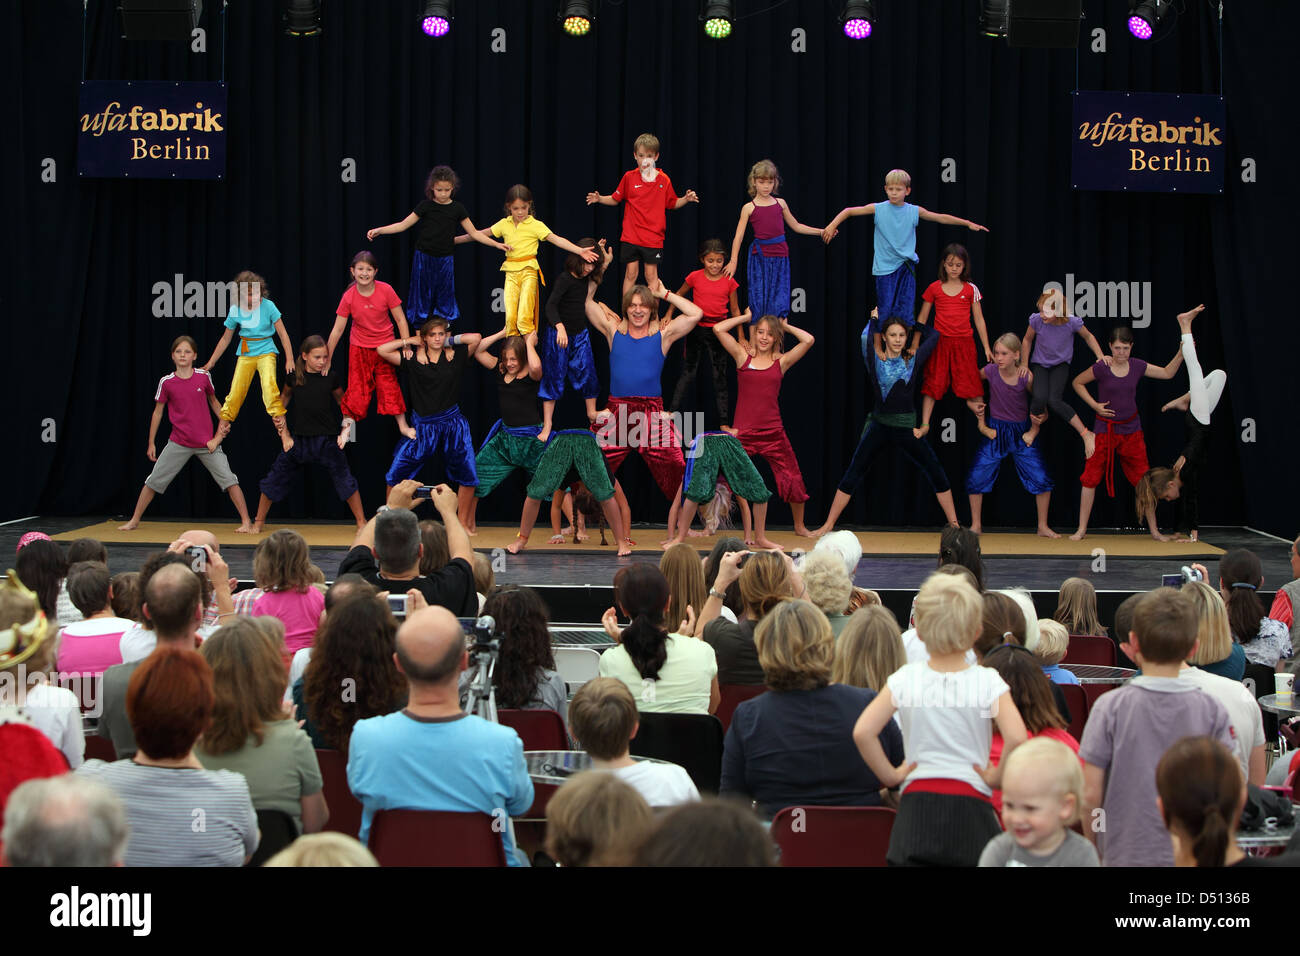 Berlino, Germania, i bambini della mostra con una performance di Ufa Fabrik le loro acrobazie Foto Stock